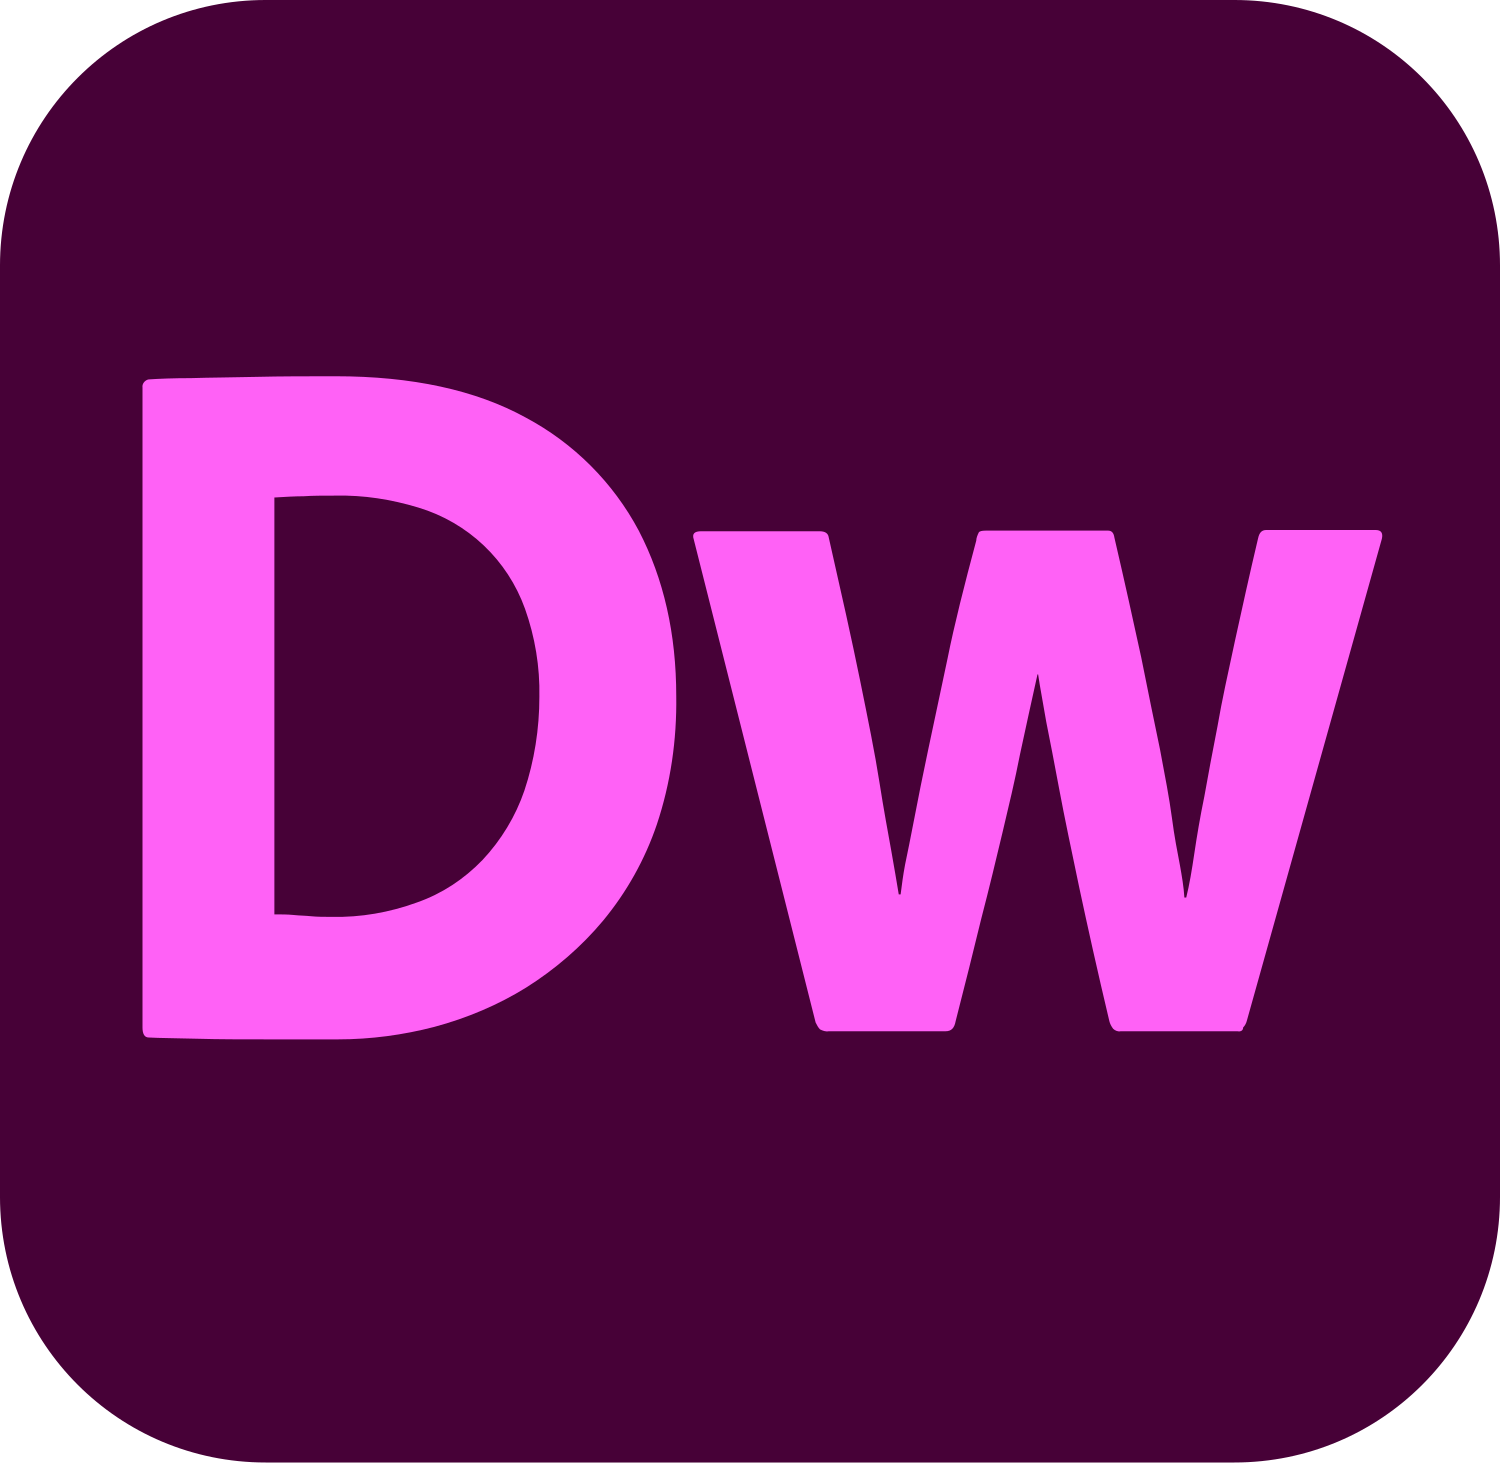 Adobe Dreamweaver - Wikiwand